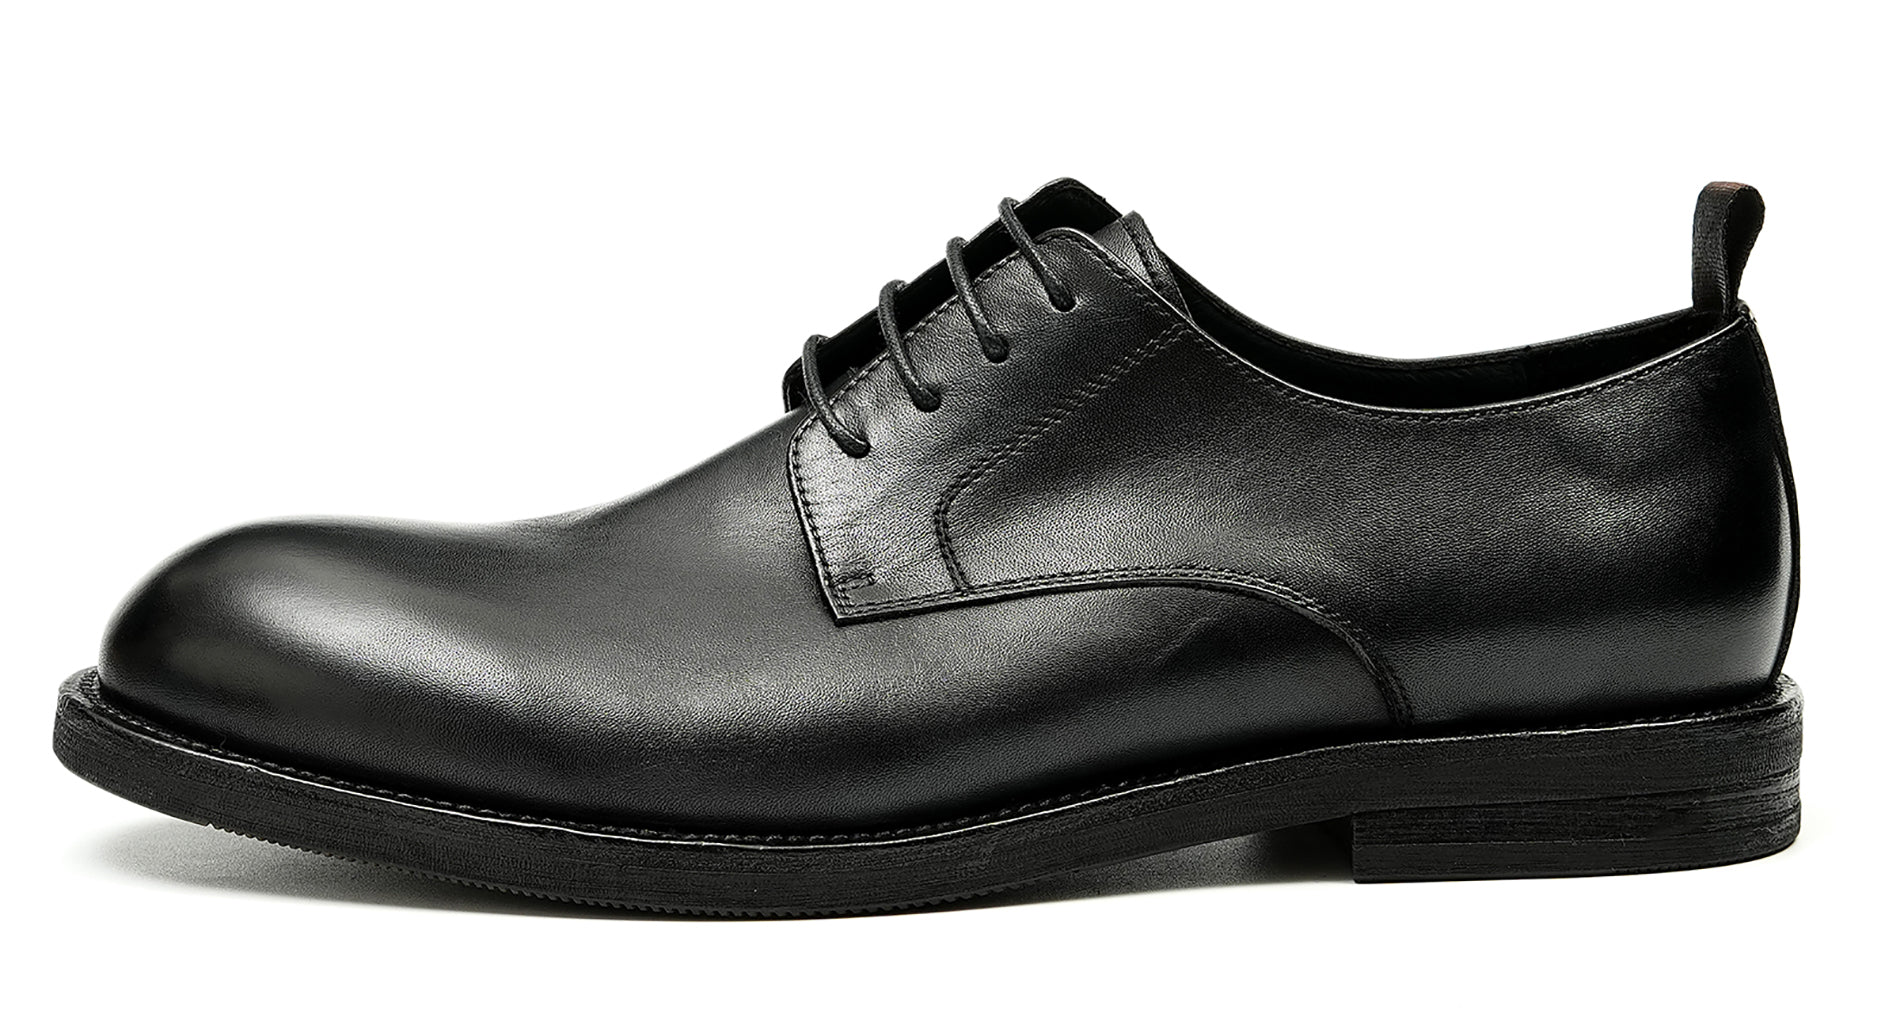 Men's Plain Toe Derby Dress Formal Shoes